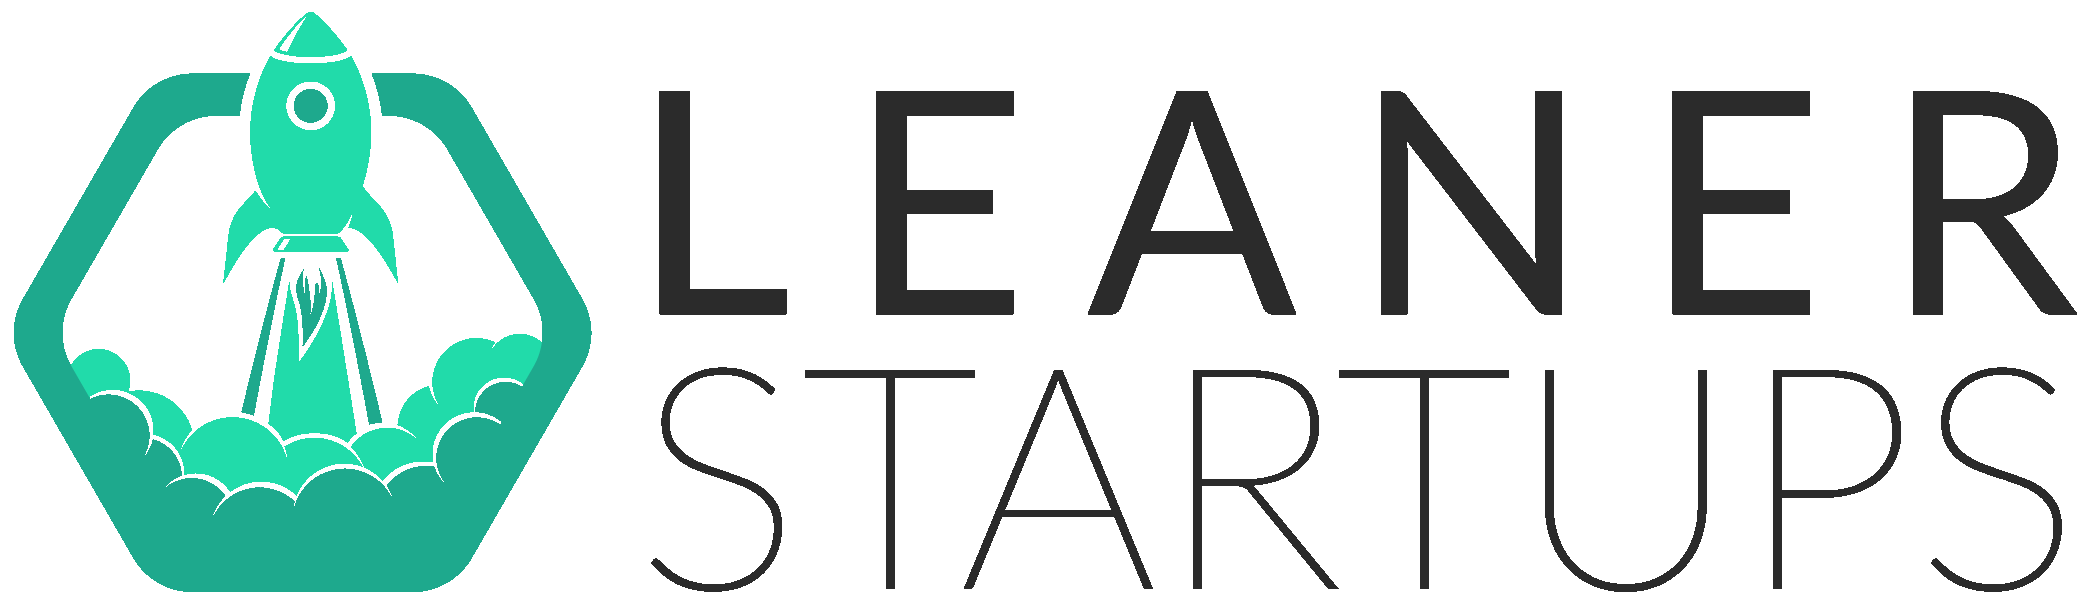 Leaner Startups logo